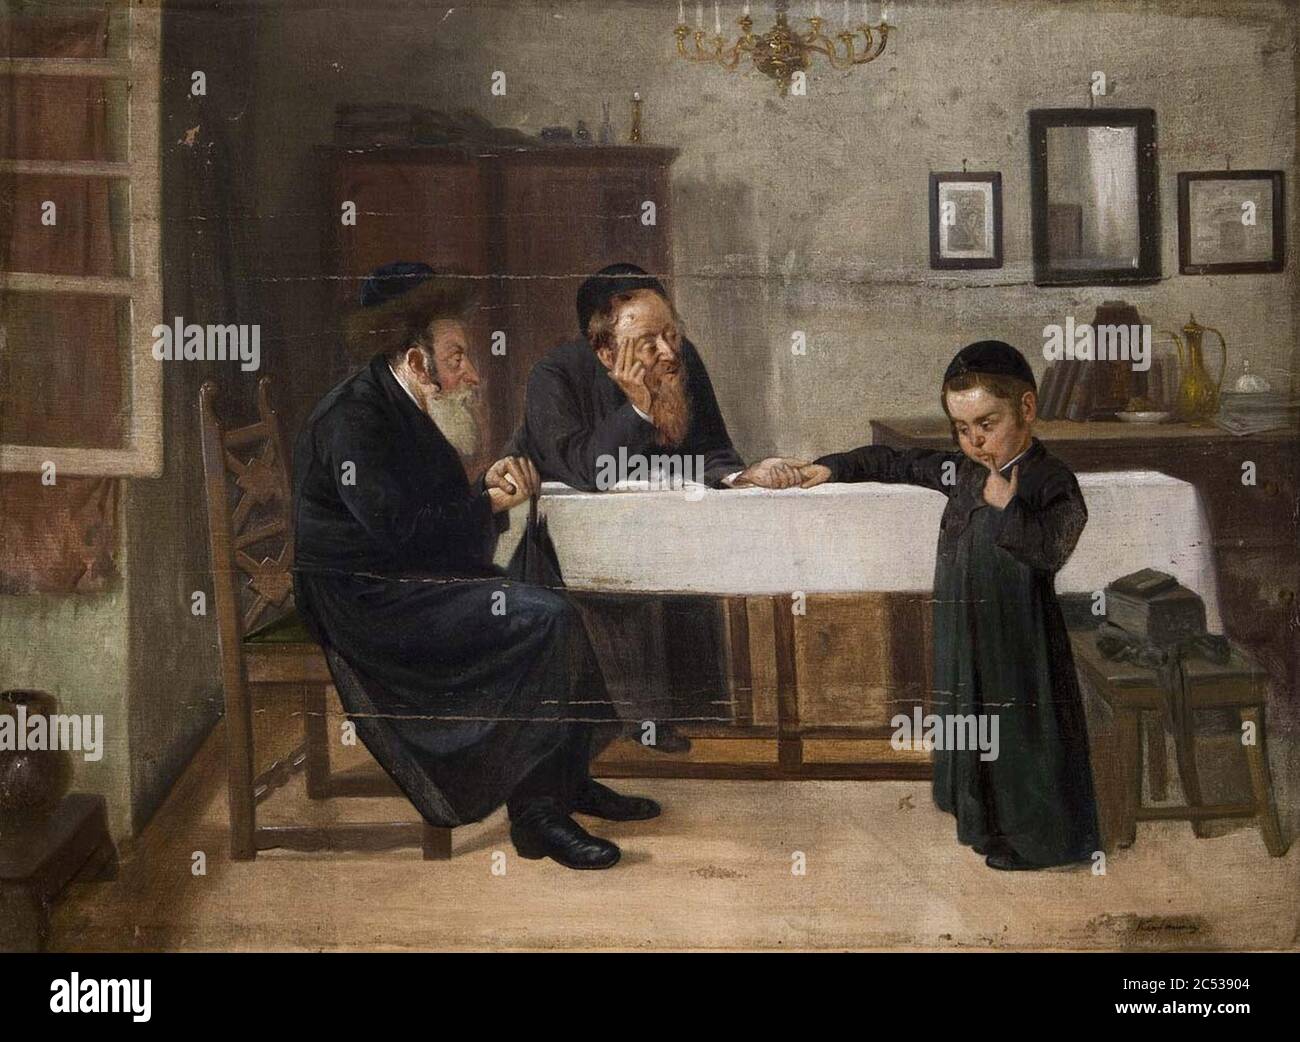 Interieur mit Rabbiner Vater und Sohn. Stock Photo